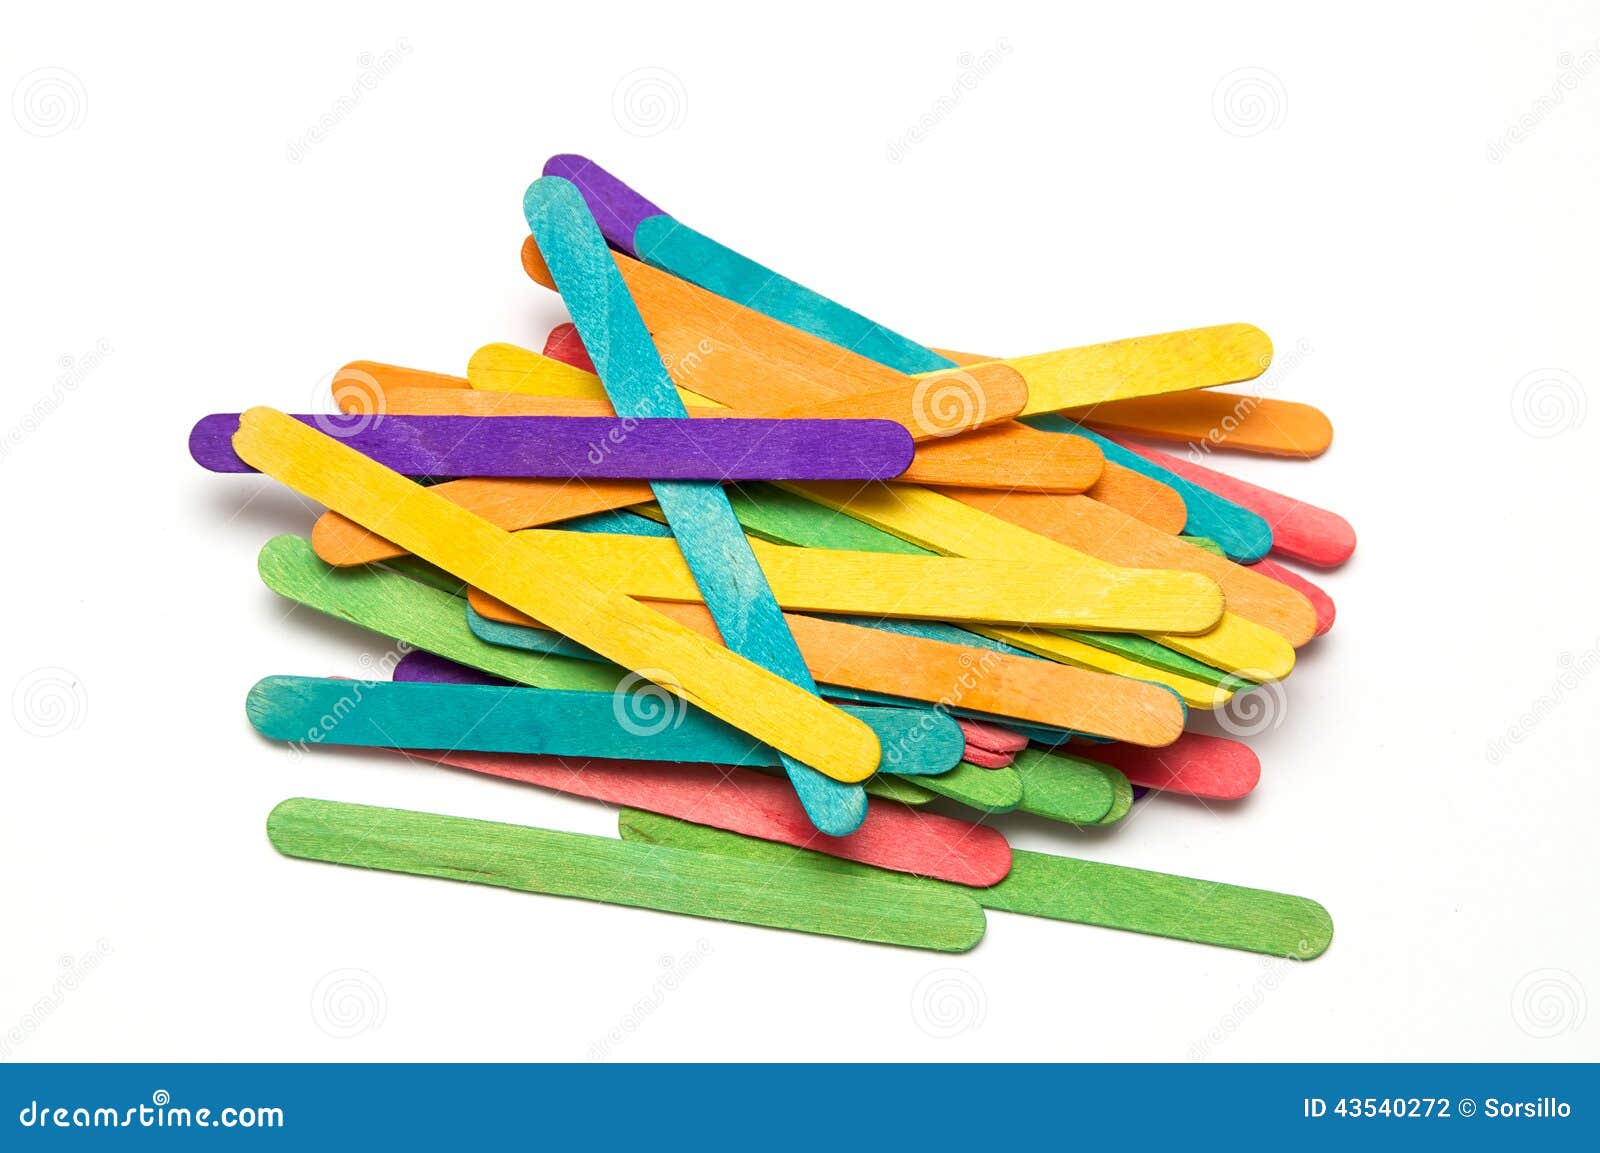 1 187 photos et images de Colored Craft Sticks - Getty Images